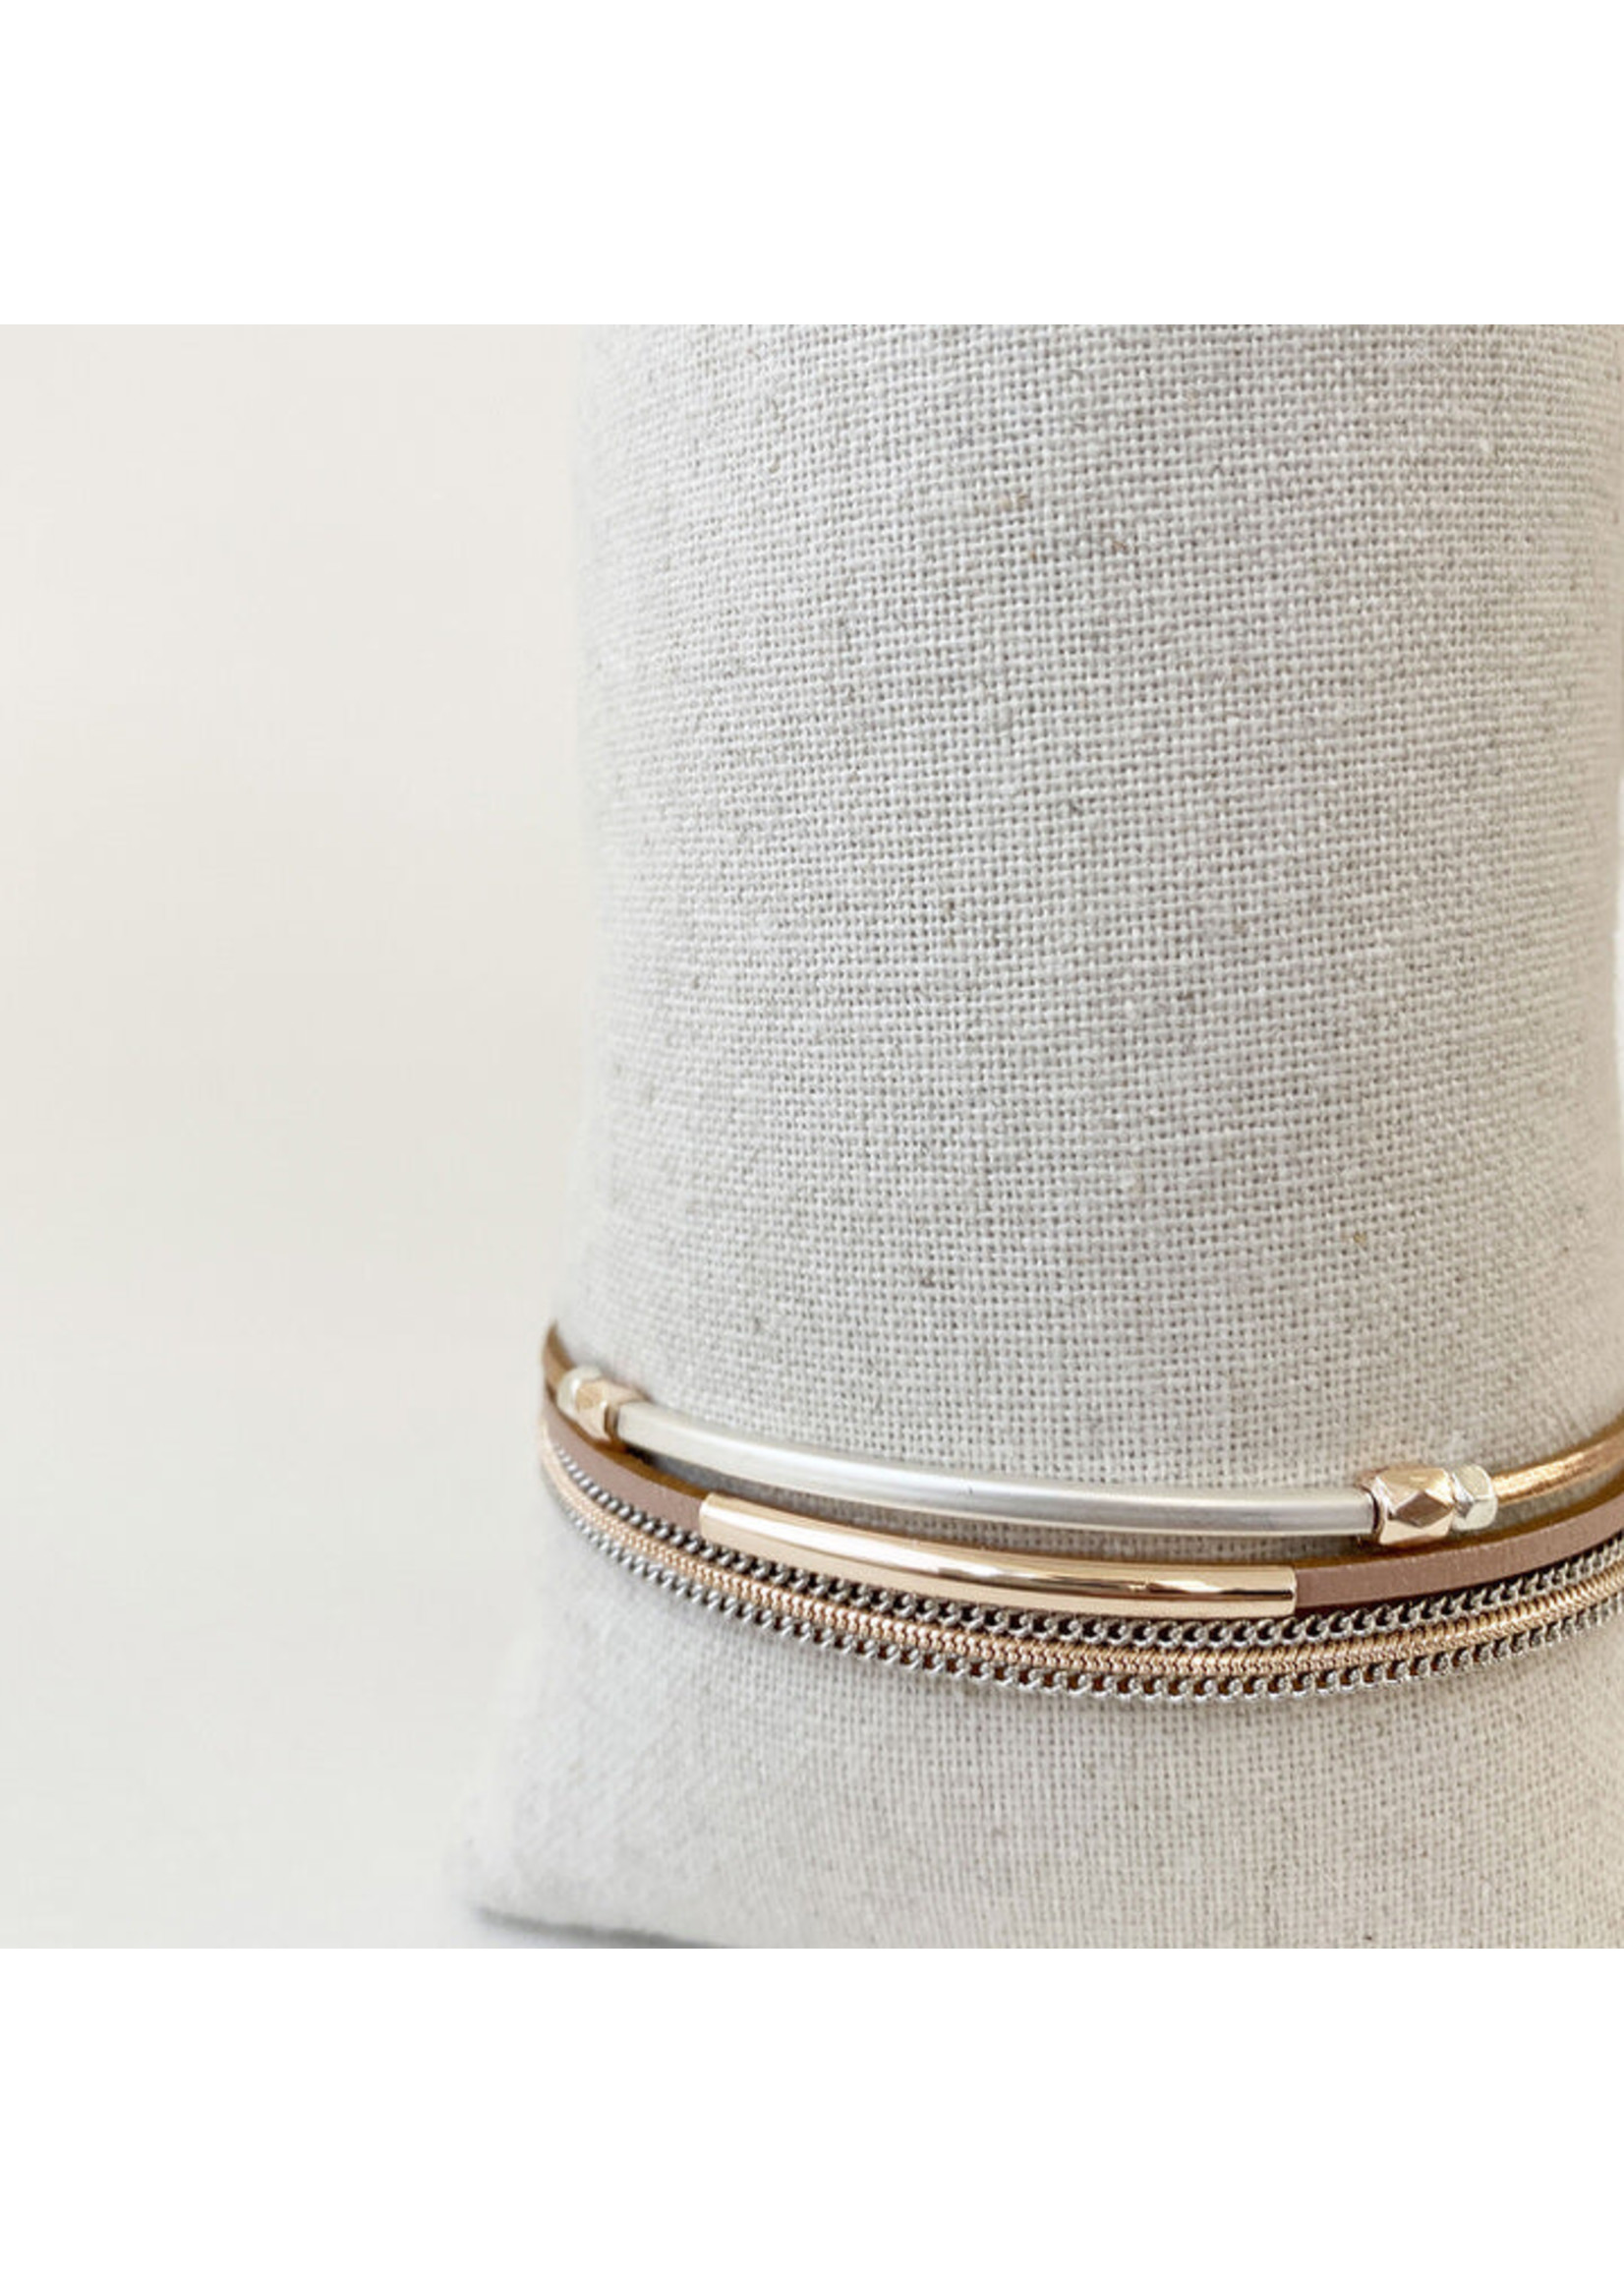 Delicate Single Multi-strand Bracelet in Genuine Leather w/Metal